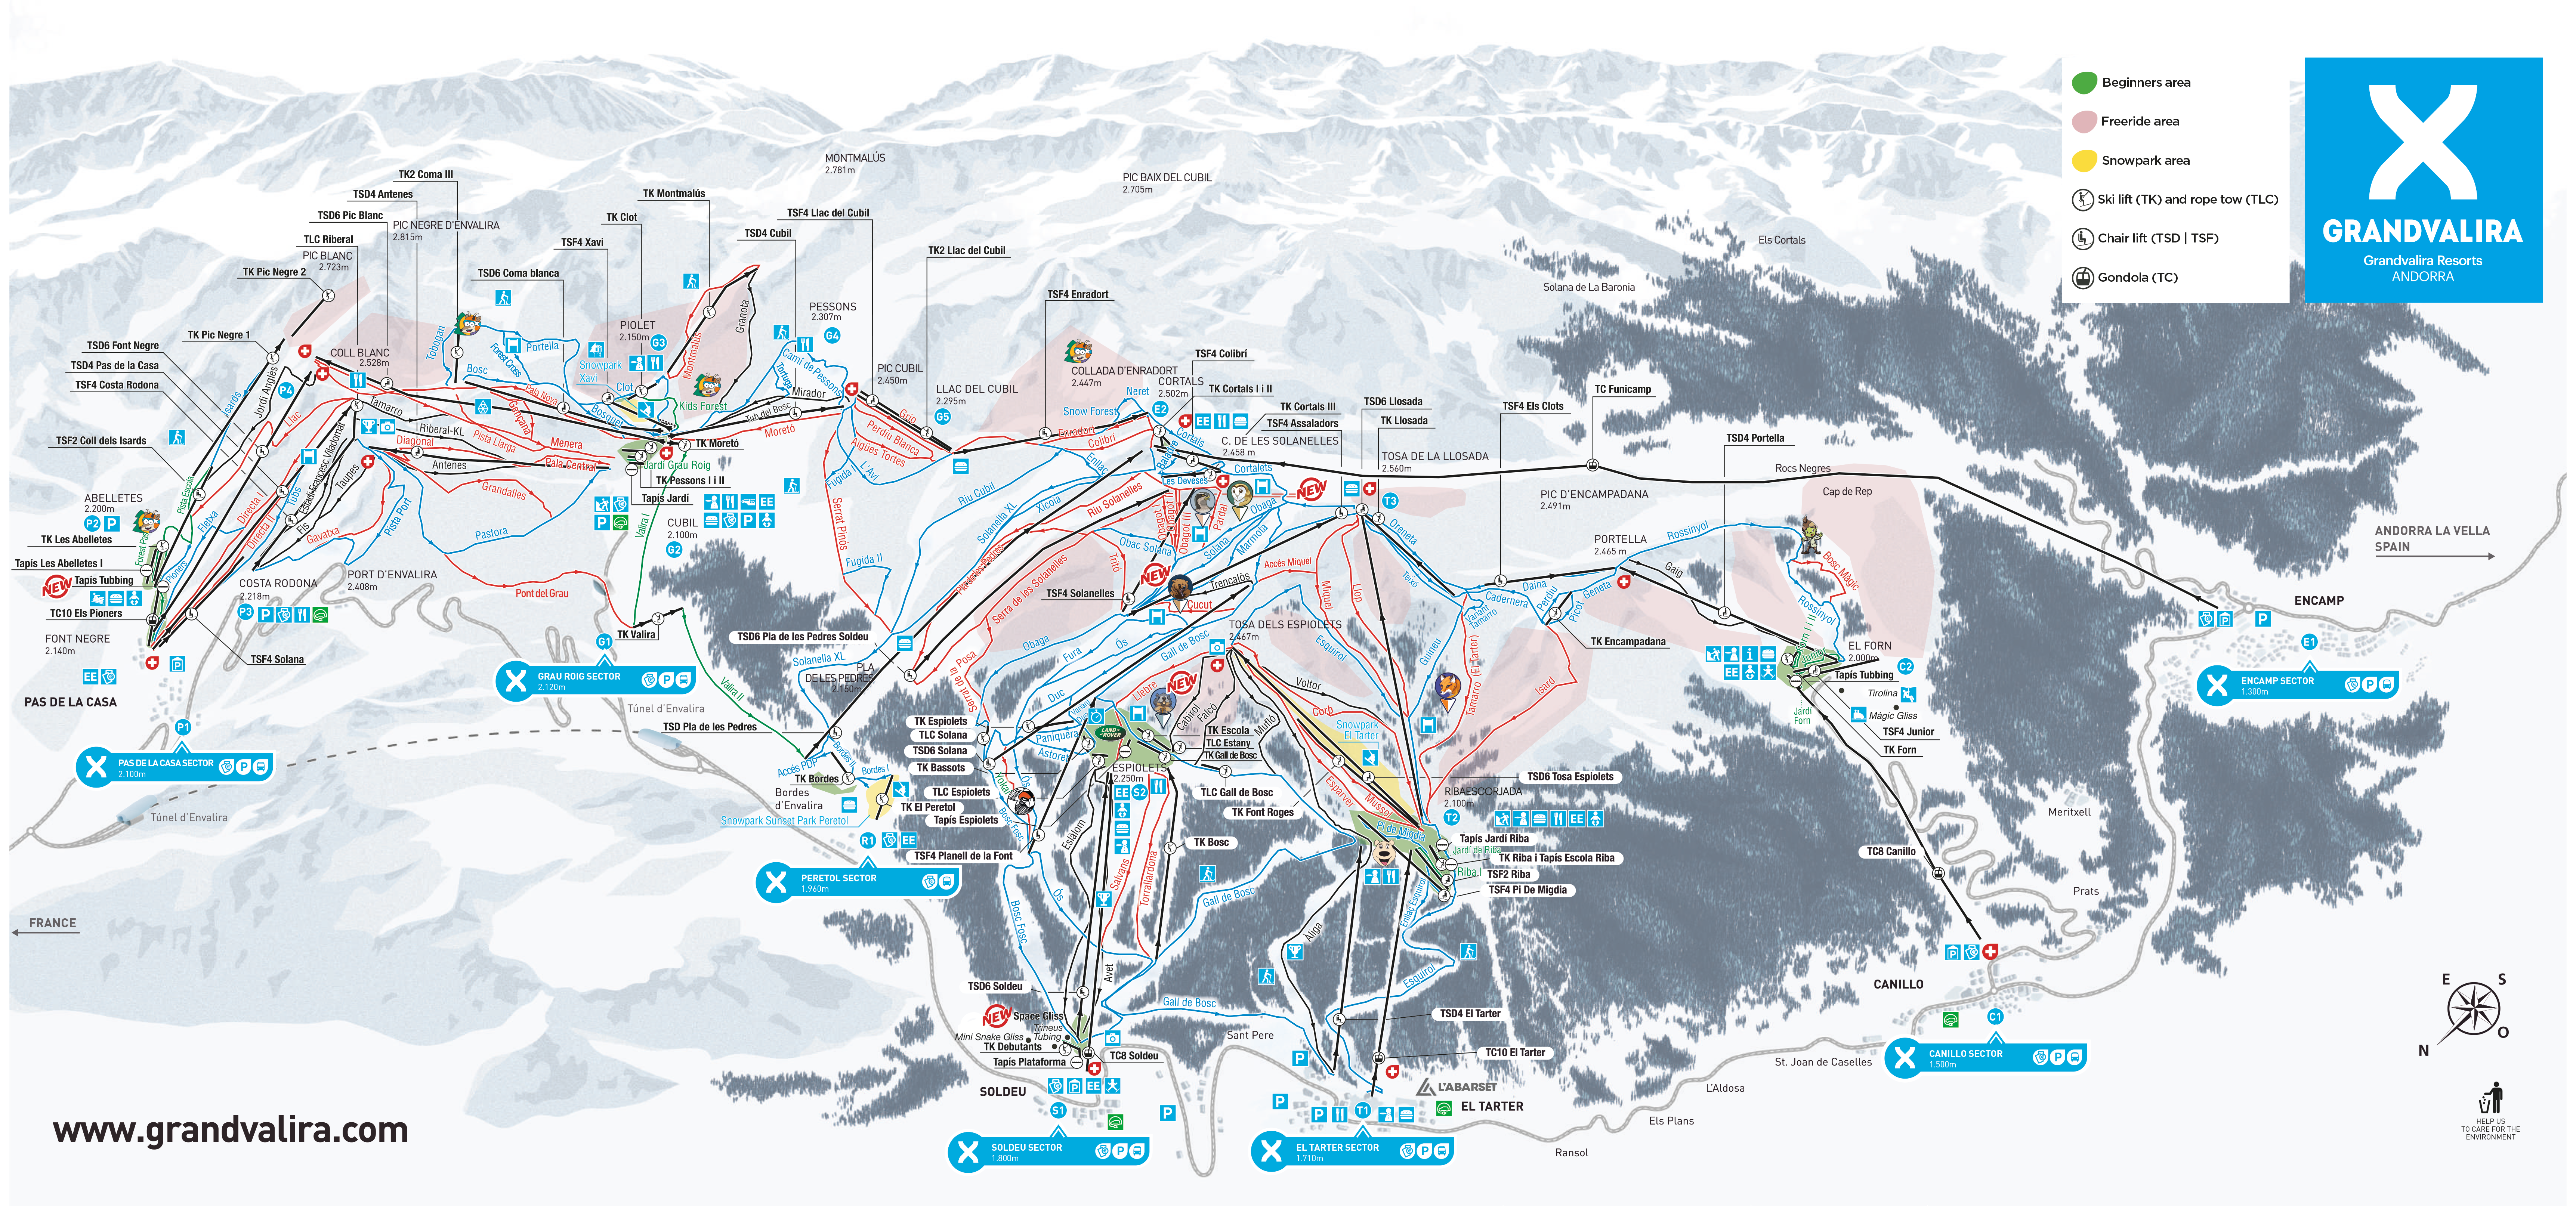 Grandvalira Ski Resort trail map